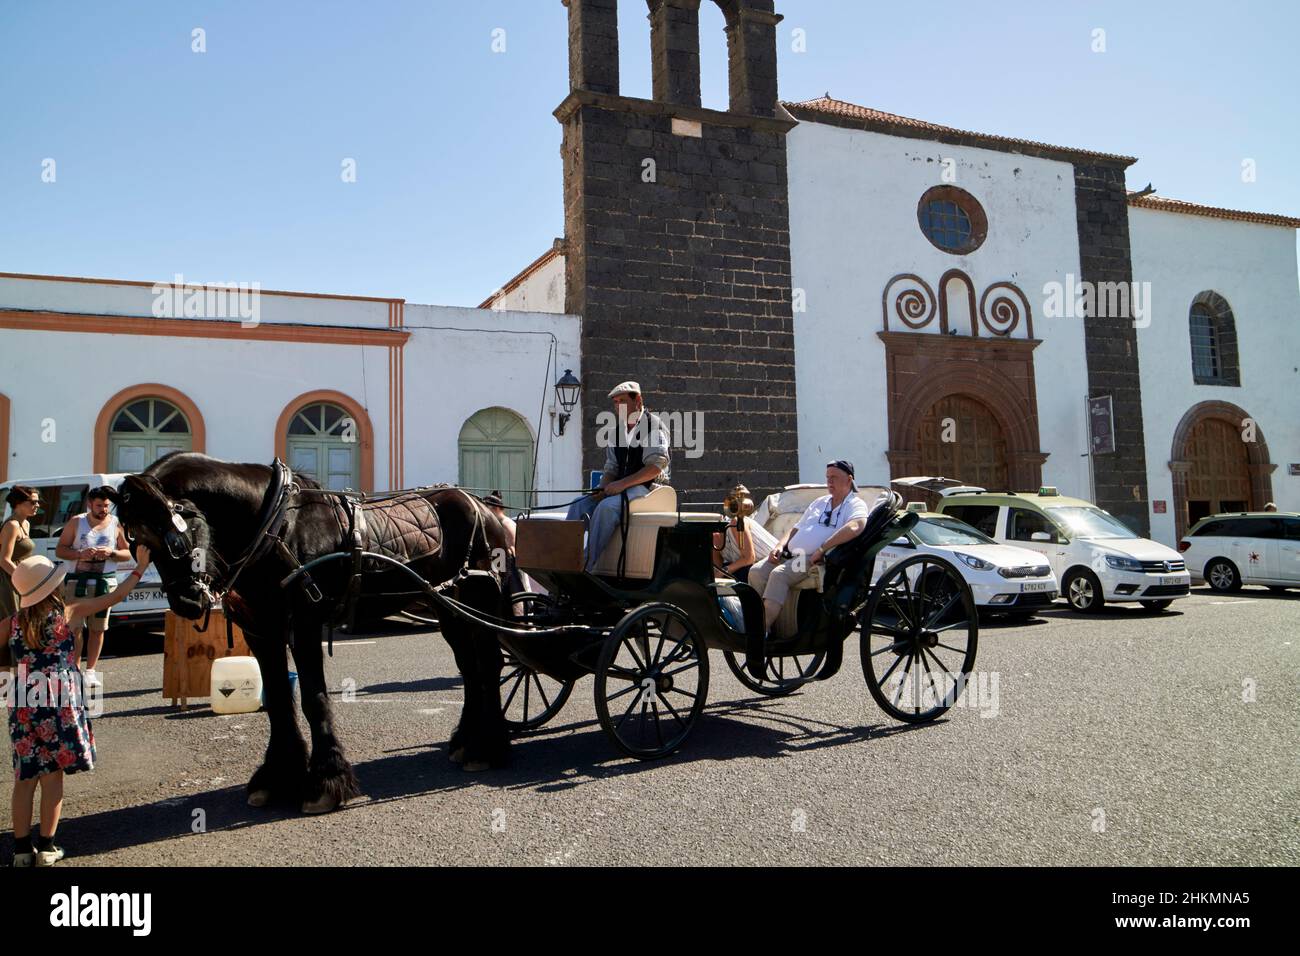 Pferdekutschenfahrten für Touristen am Markttag Teguise Lanzarote Kanarische Inseln Spanien Stockfoto